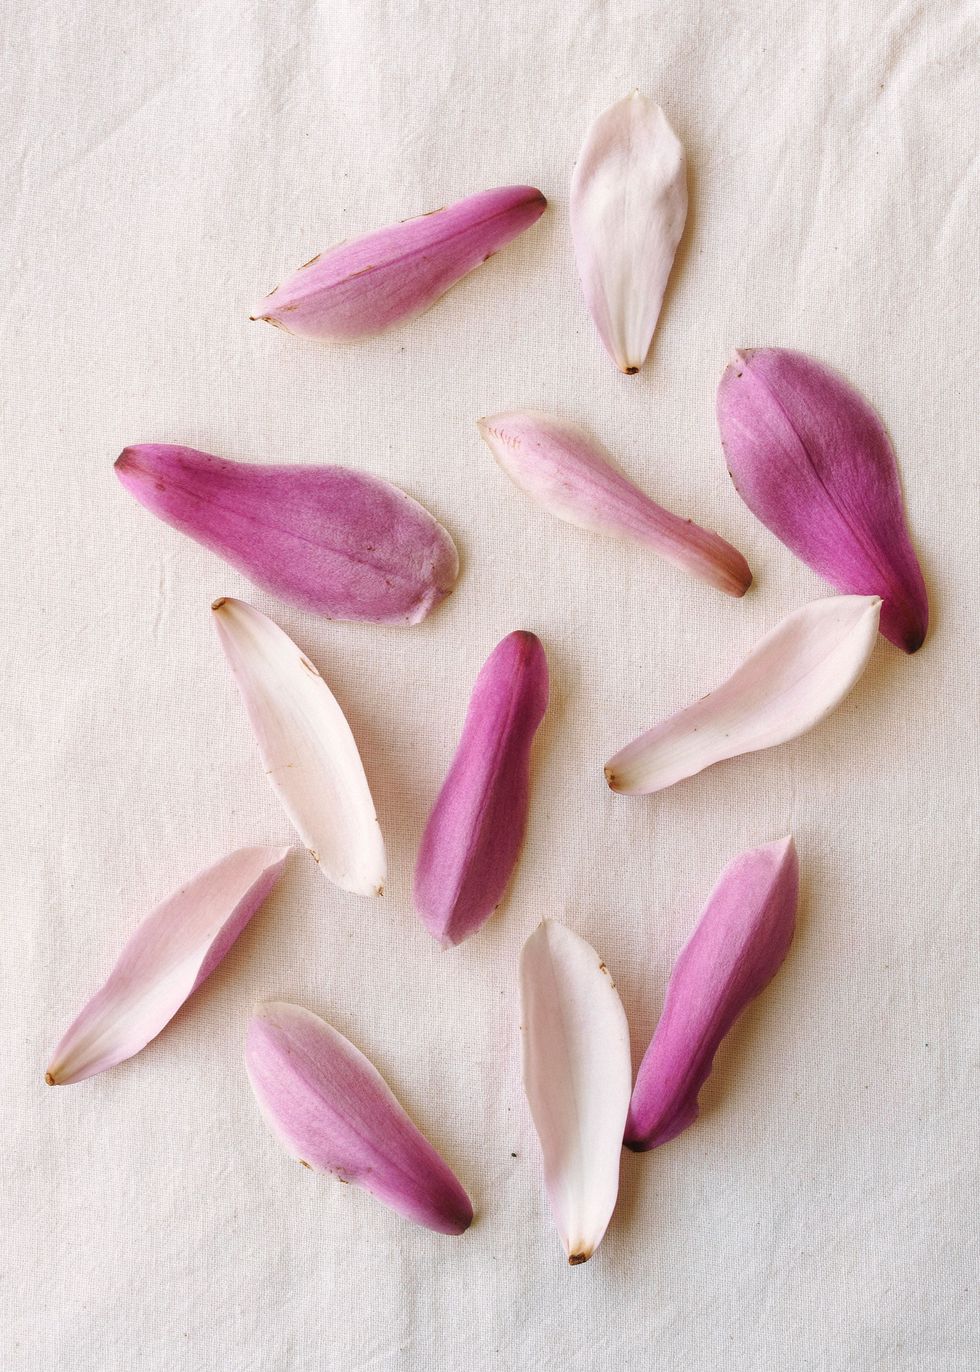 De grote naar citroen smakende bloemblaadjes van de magnolia kunnen worden ingelegd voor de lekkerste smaak